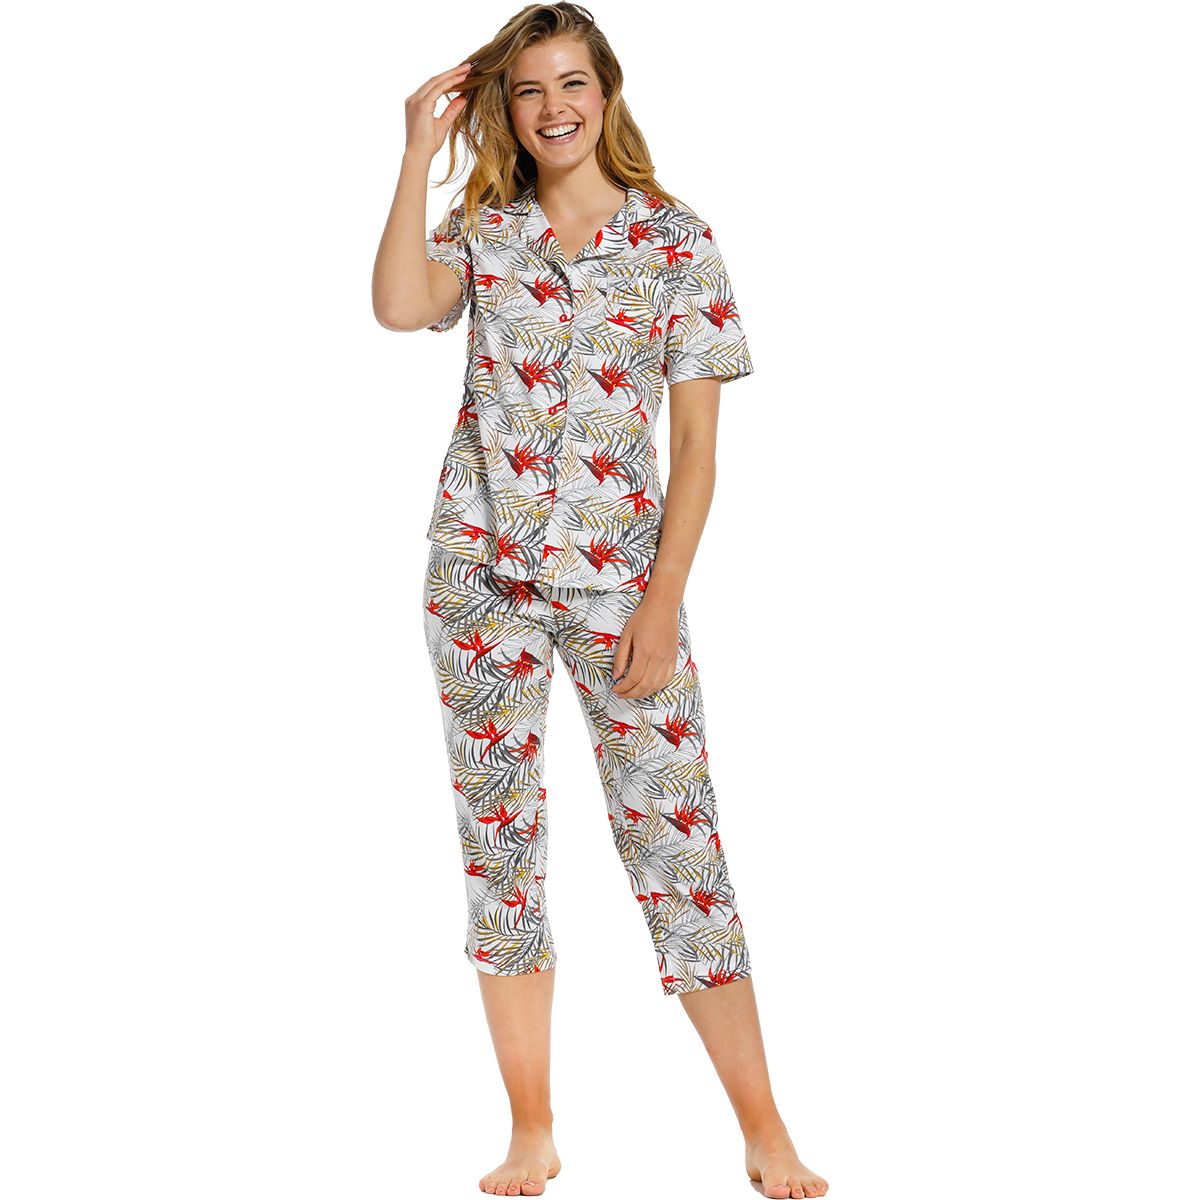 Voorafgaan informeel Bandiet Katoenen dames doorknoop pyjama | Gratis verzending | Gratis retour | Snel  in huis | Online de mooiste pyjama's, nachthemden, ondermode en meer